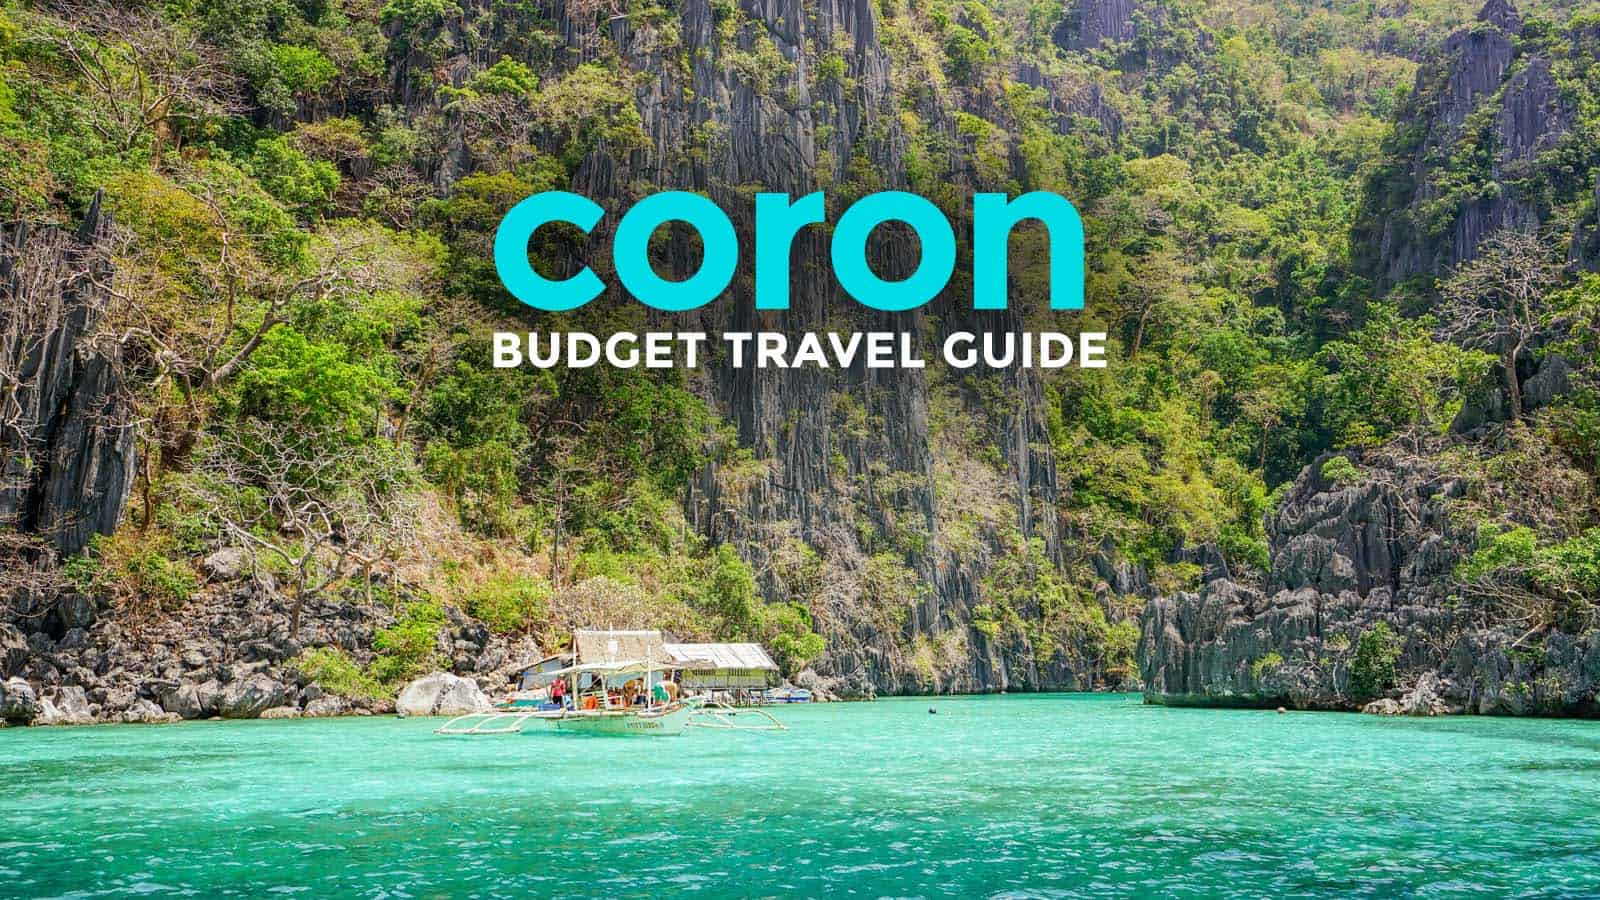 CORON巴拉望旅游指南与预算行程